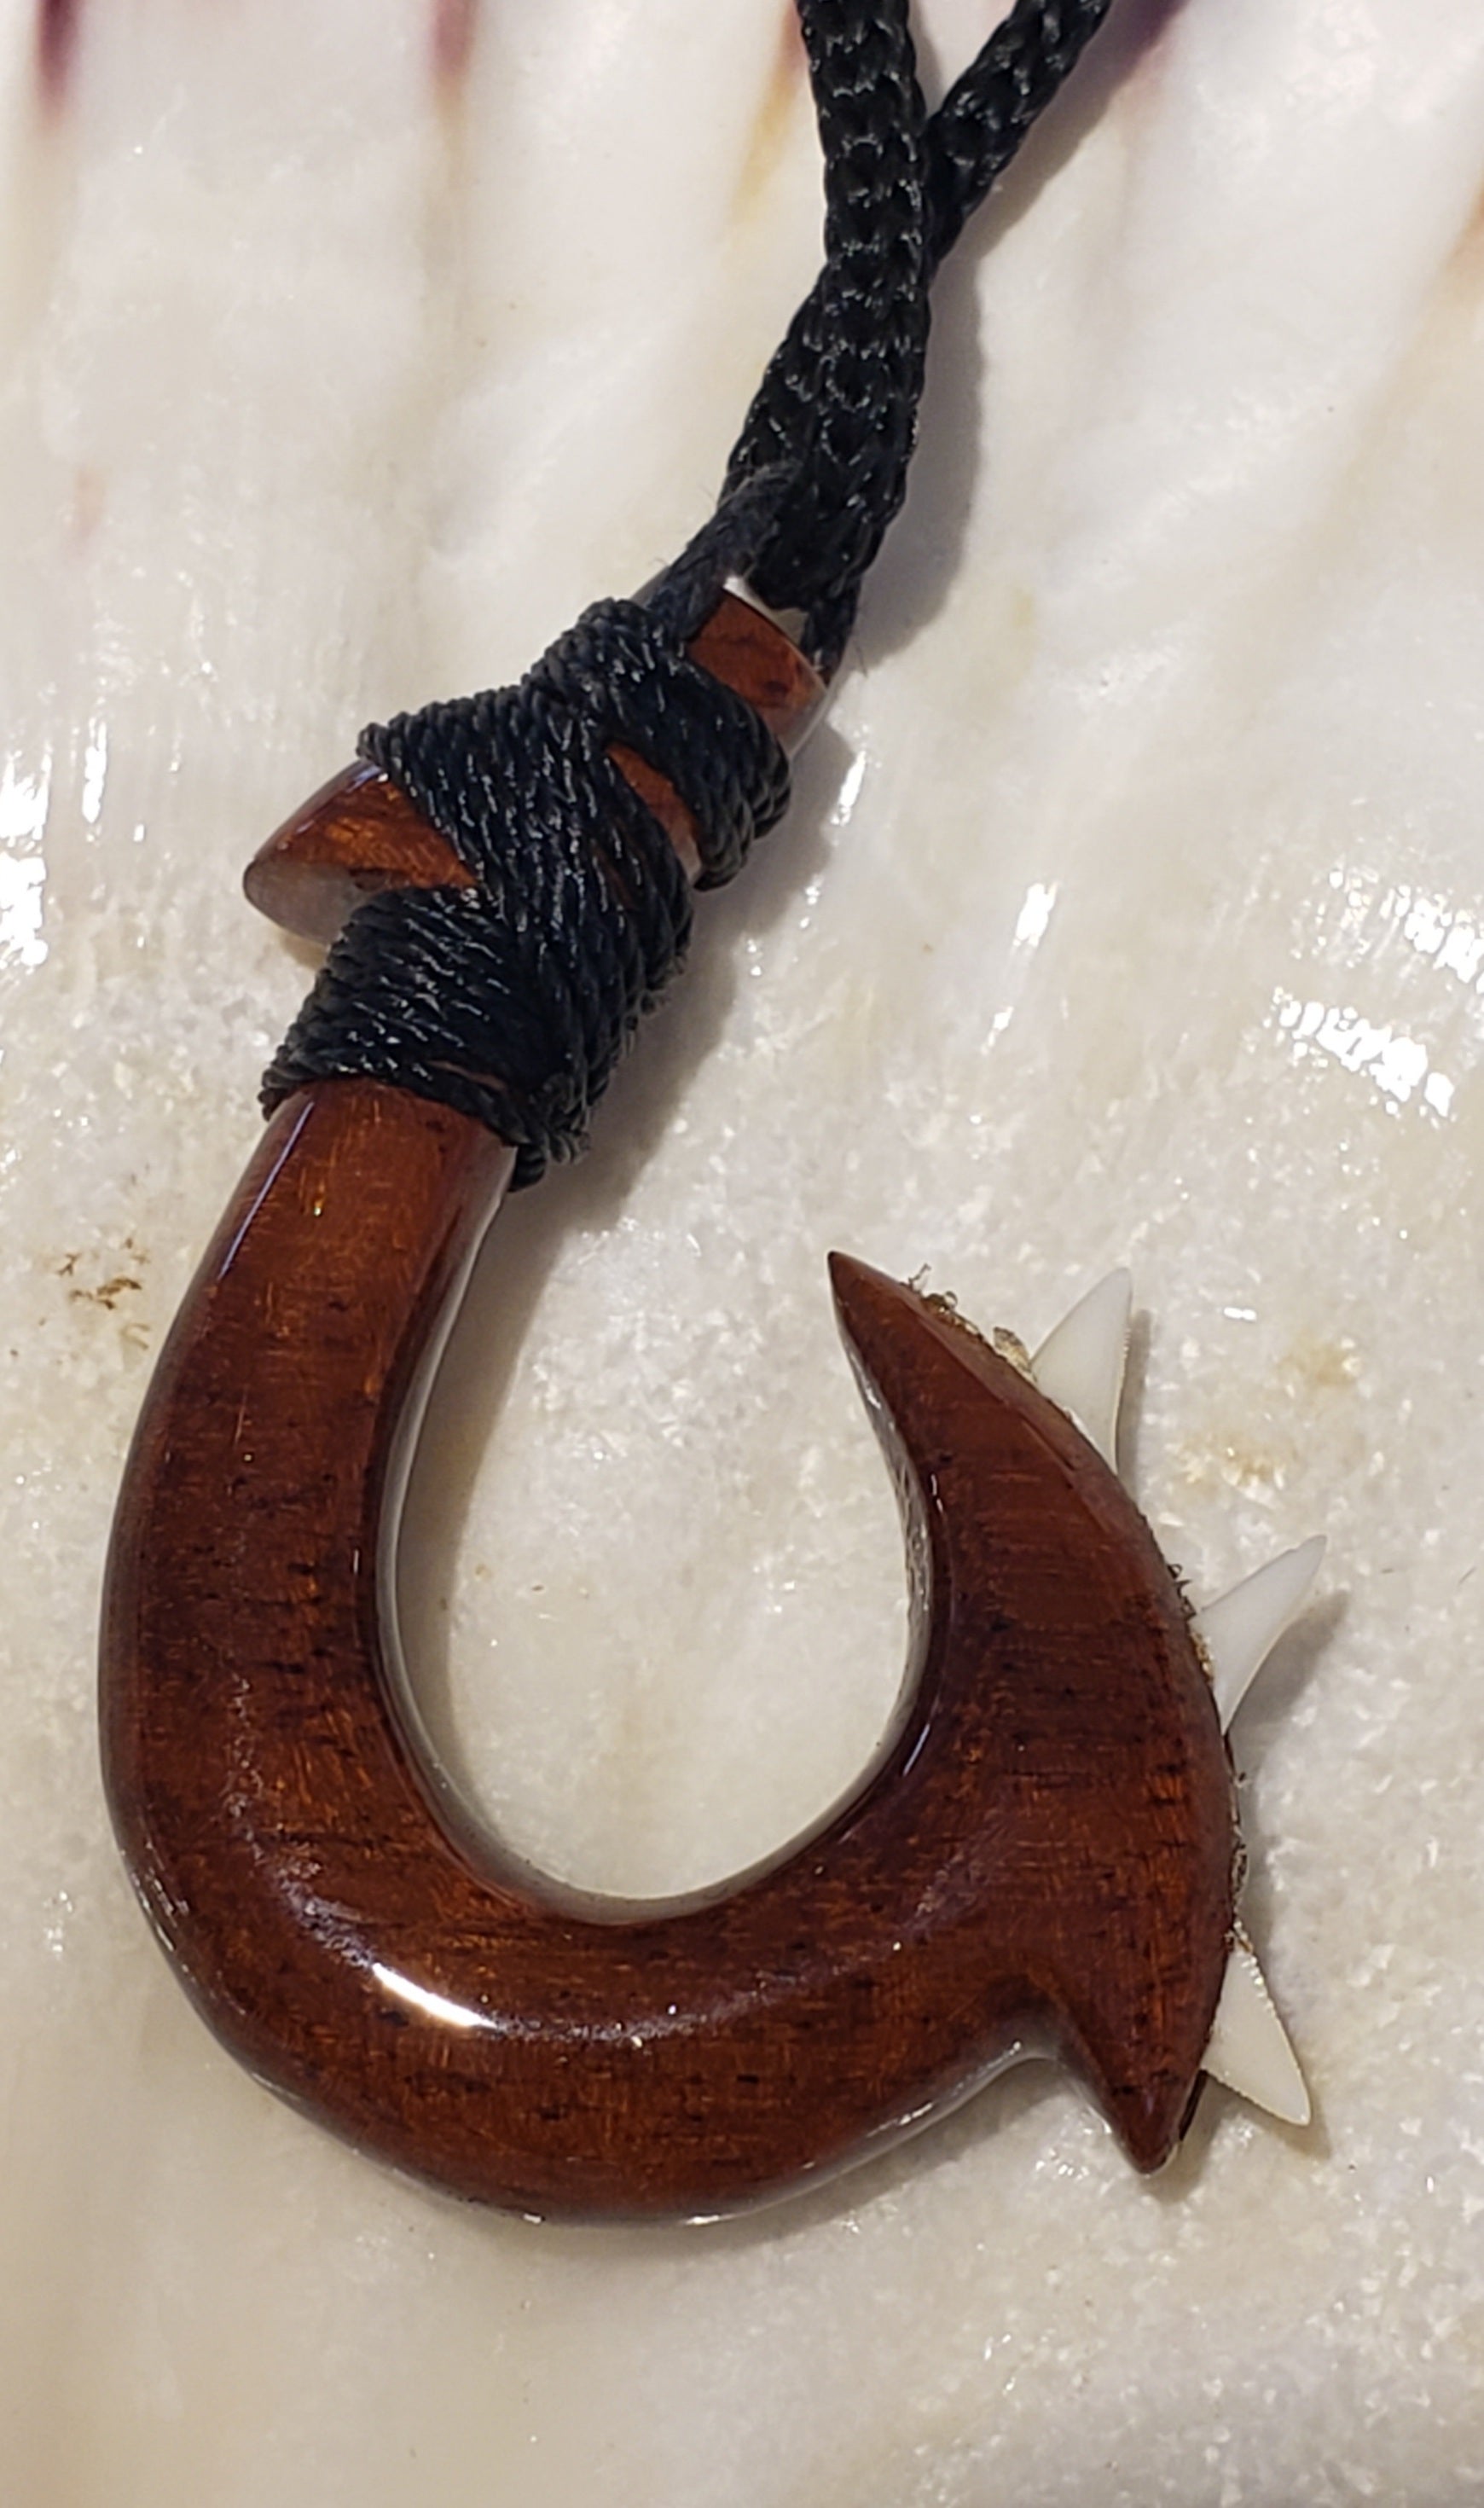 Koa Wood Hook with 3 Reef Shark Teeth and Hawaiian tribal design 32" long Adjustable Cord